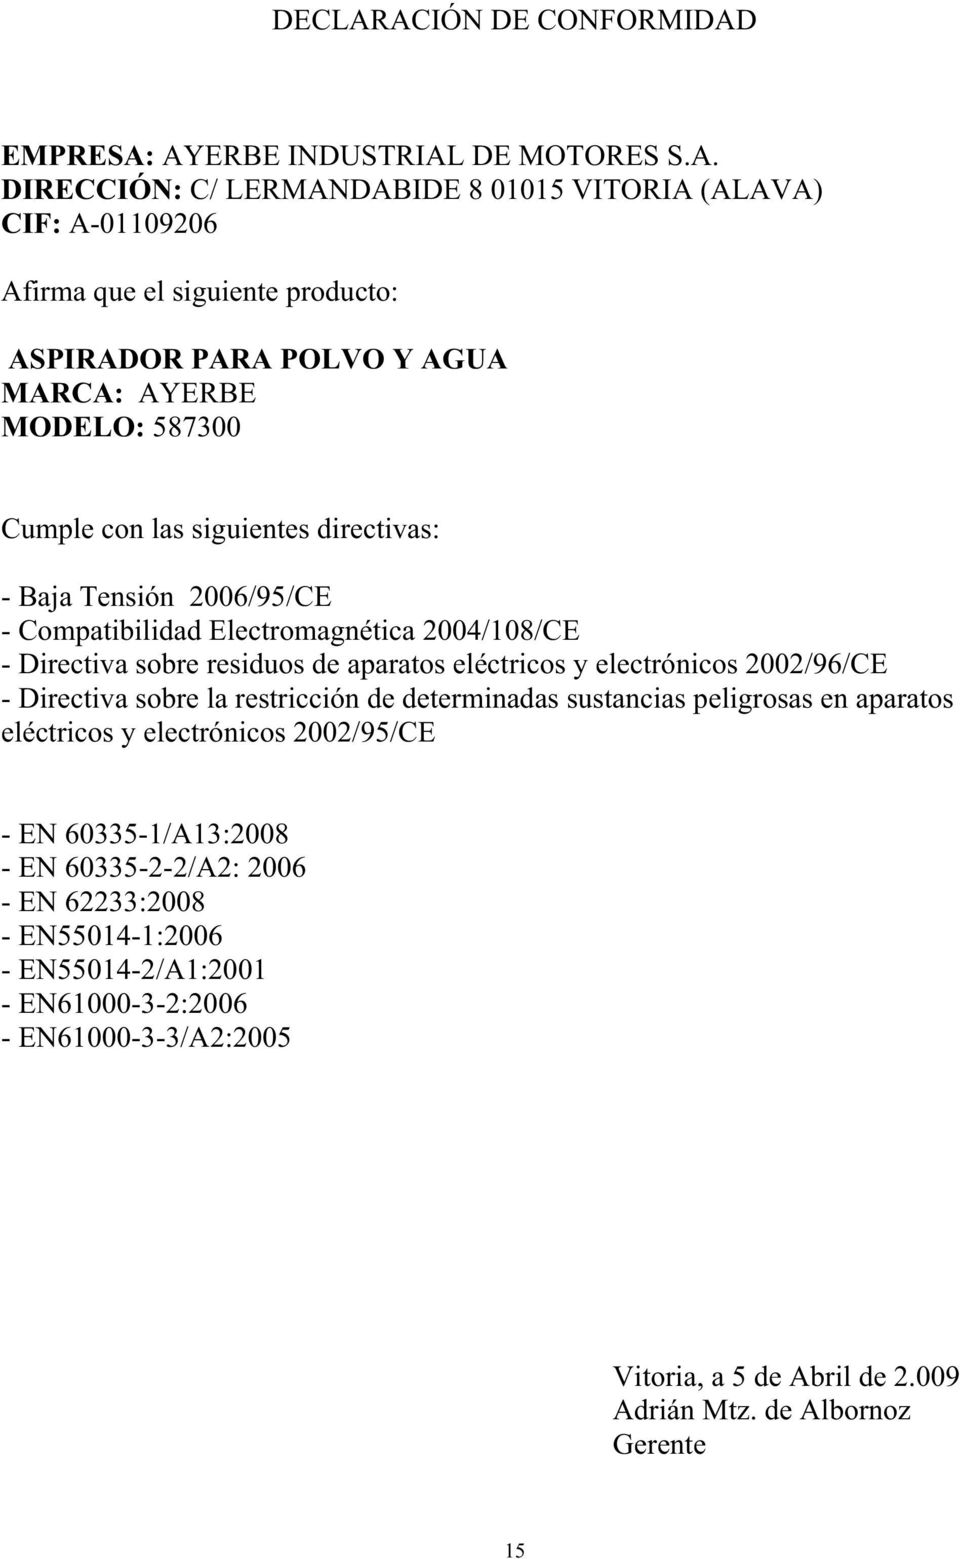 POLVO Y AGUA MARCA: AYERBE MODELO: 587300 Cumple con las siguientes directivas: - Baja Tensión 2006/95/CE - Compatibilidad Electromagnética 2004/08/CE - Directiva sobre residuos de